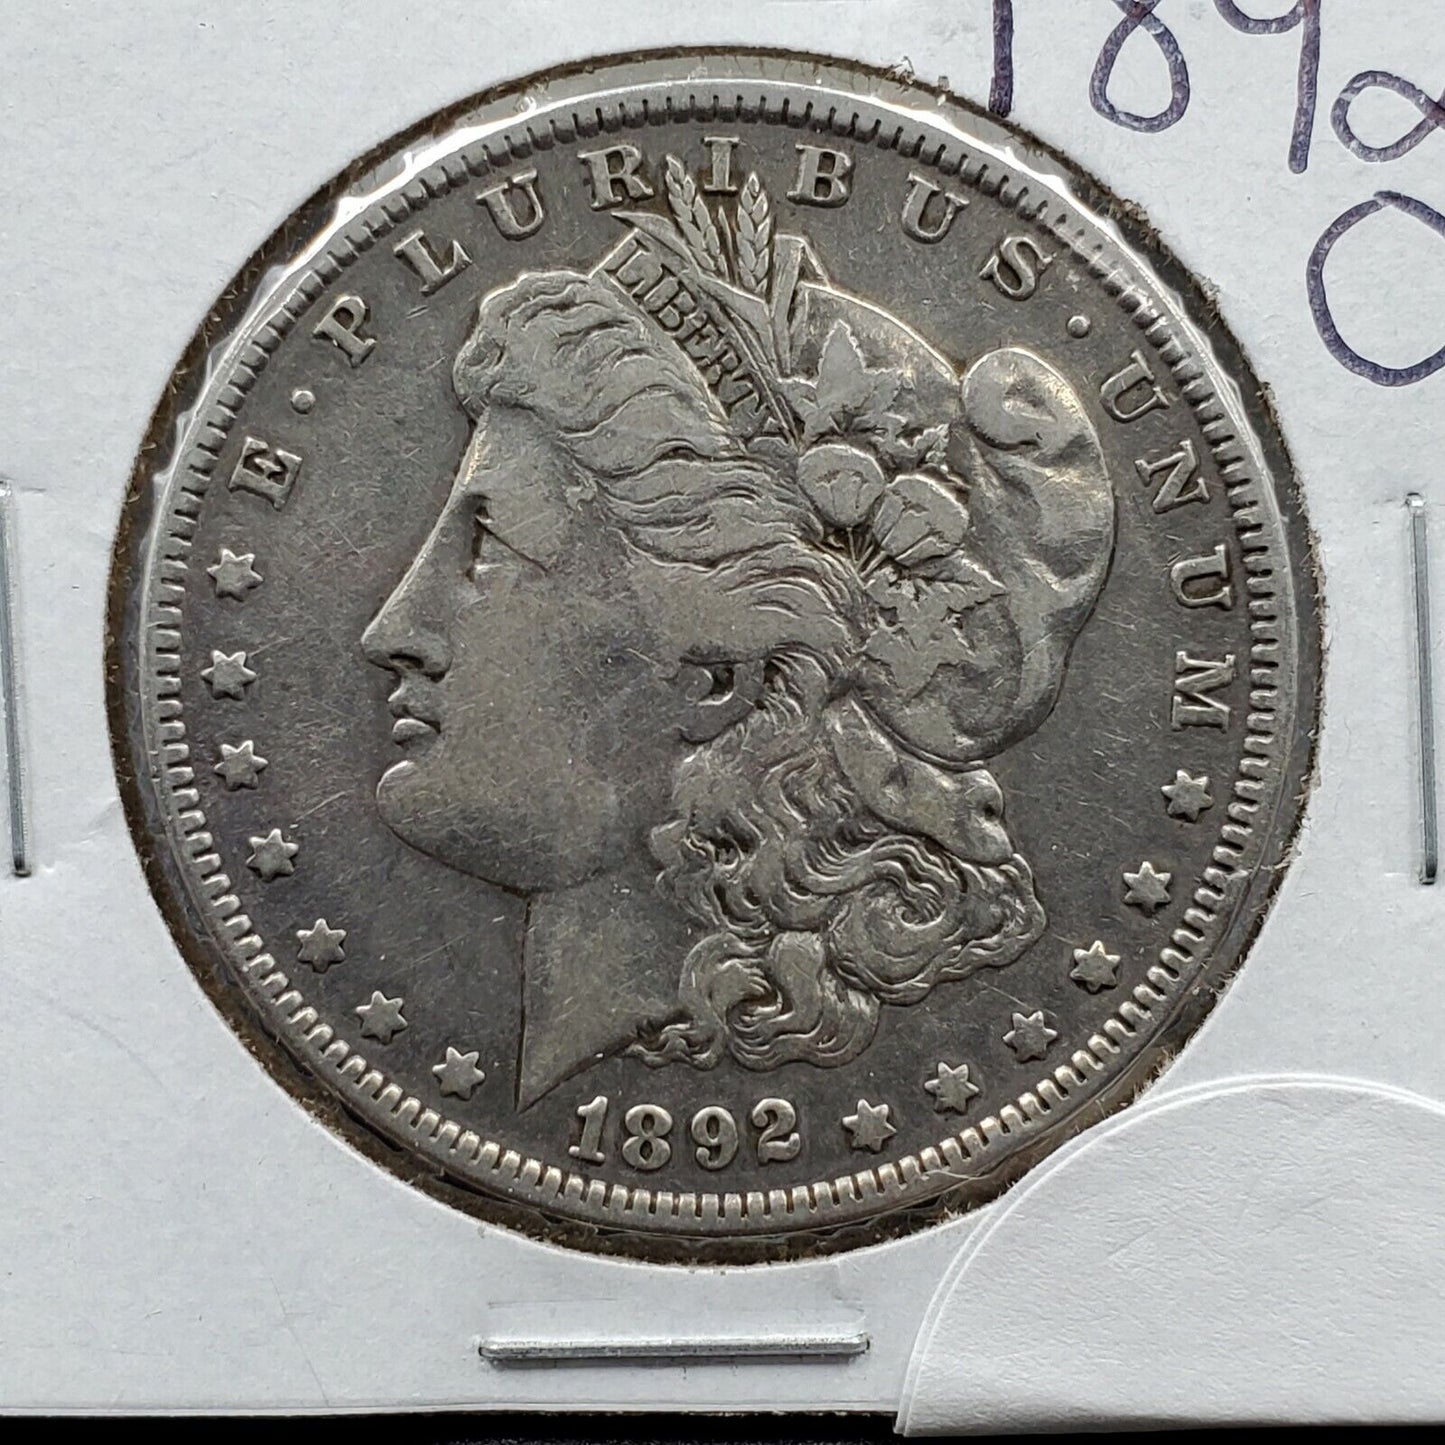 1892 O Morgan Silver Dollar Coin High Choice VF VERY FINE Circulated Condition